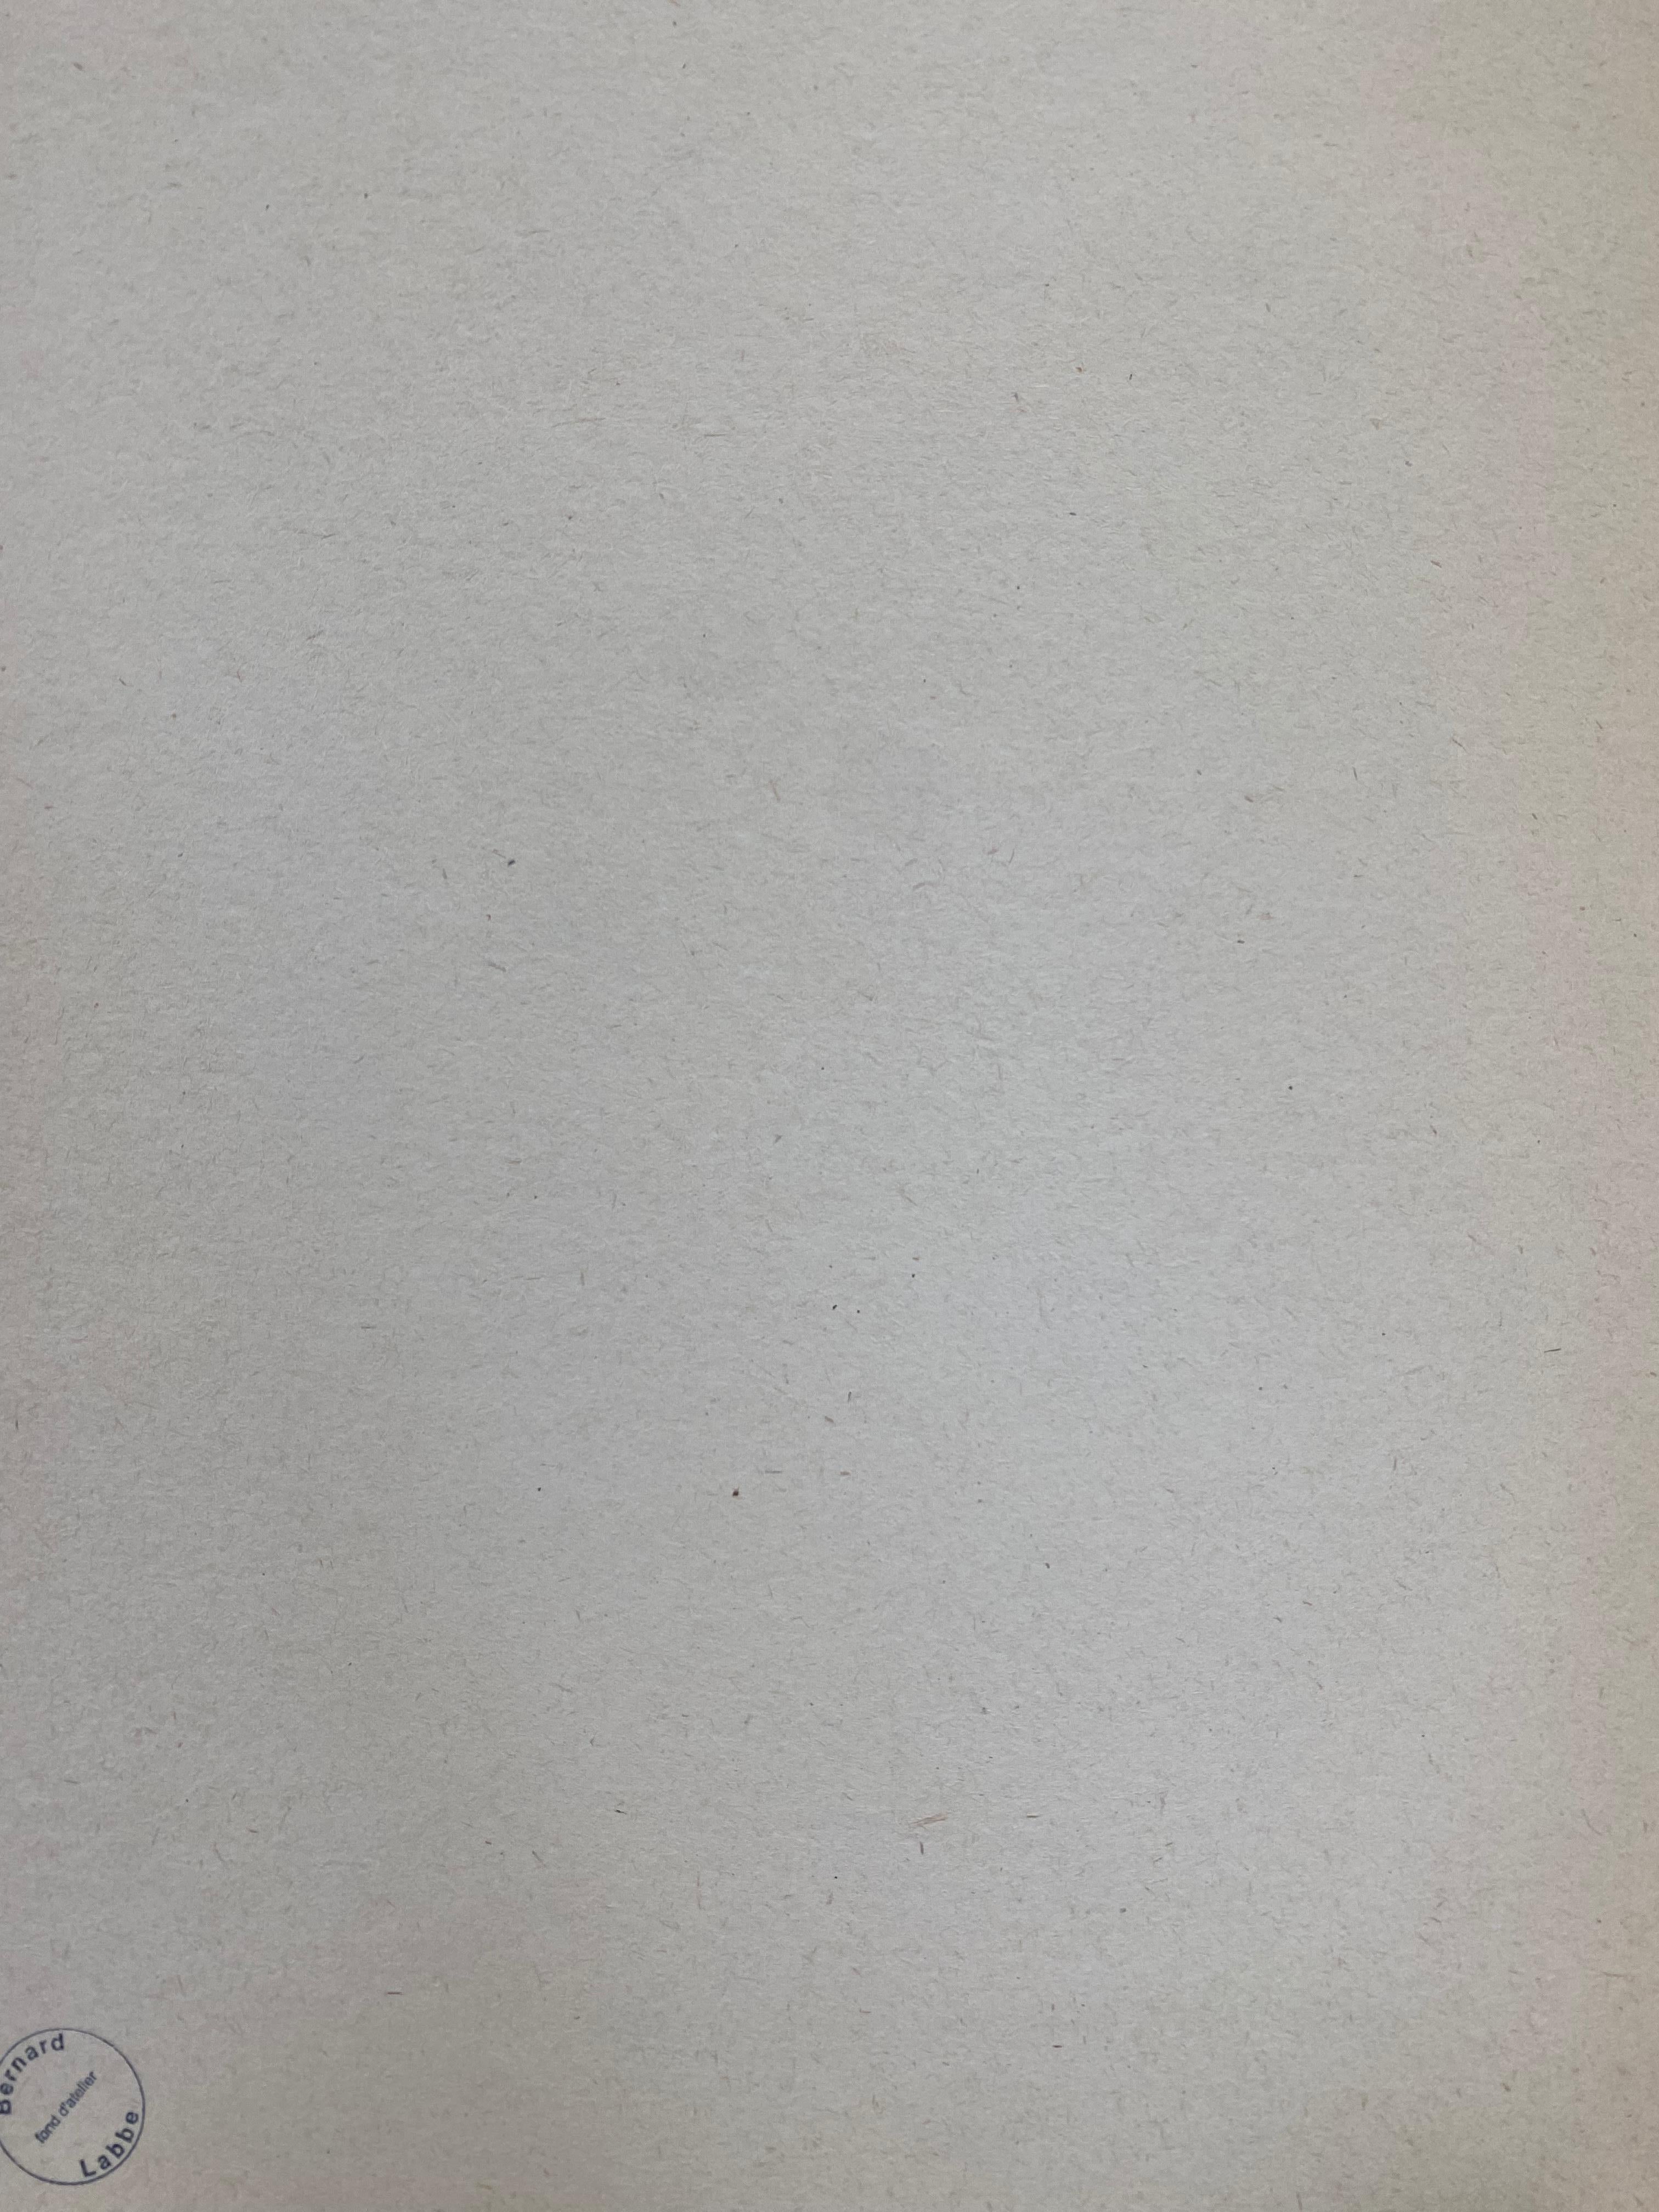 Französische Landschaft
von Bernard Labbe (französisch Mitte des 20. Jahrhunderts)
Original-Aquarell/Gouache auf Künstlerpapier, ungerahmt
Größe: 50,8 x 13 Zoll
Zustand: sehr gut und bereit zum Genießen. 

Provenienz: Atelier/ Atelier des Künstlers,